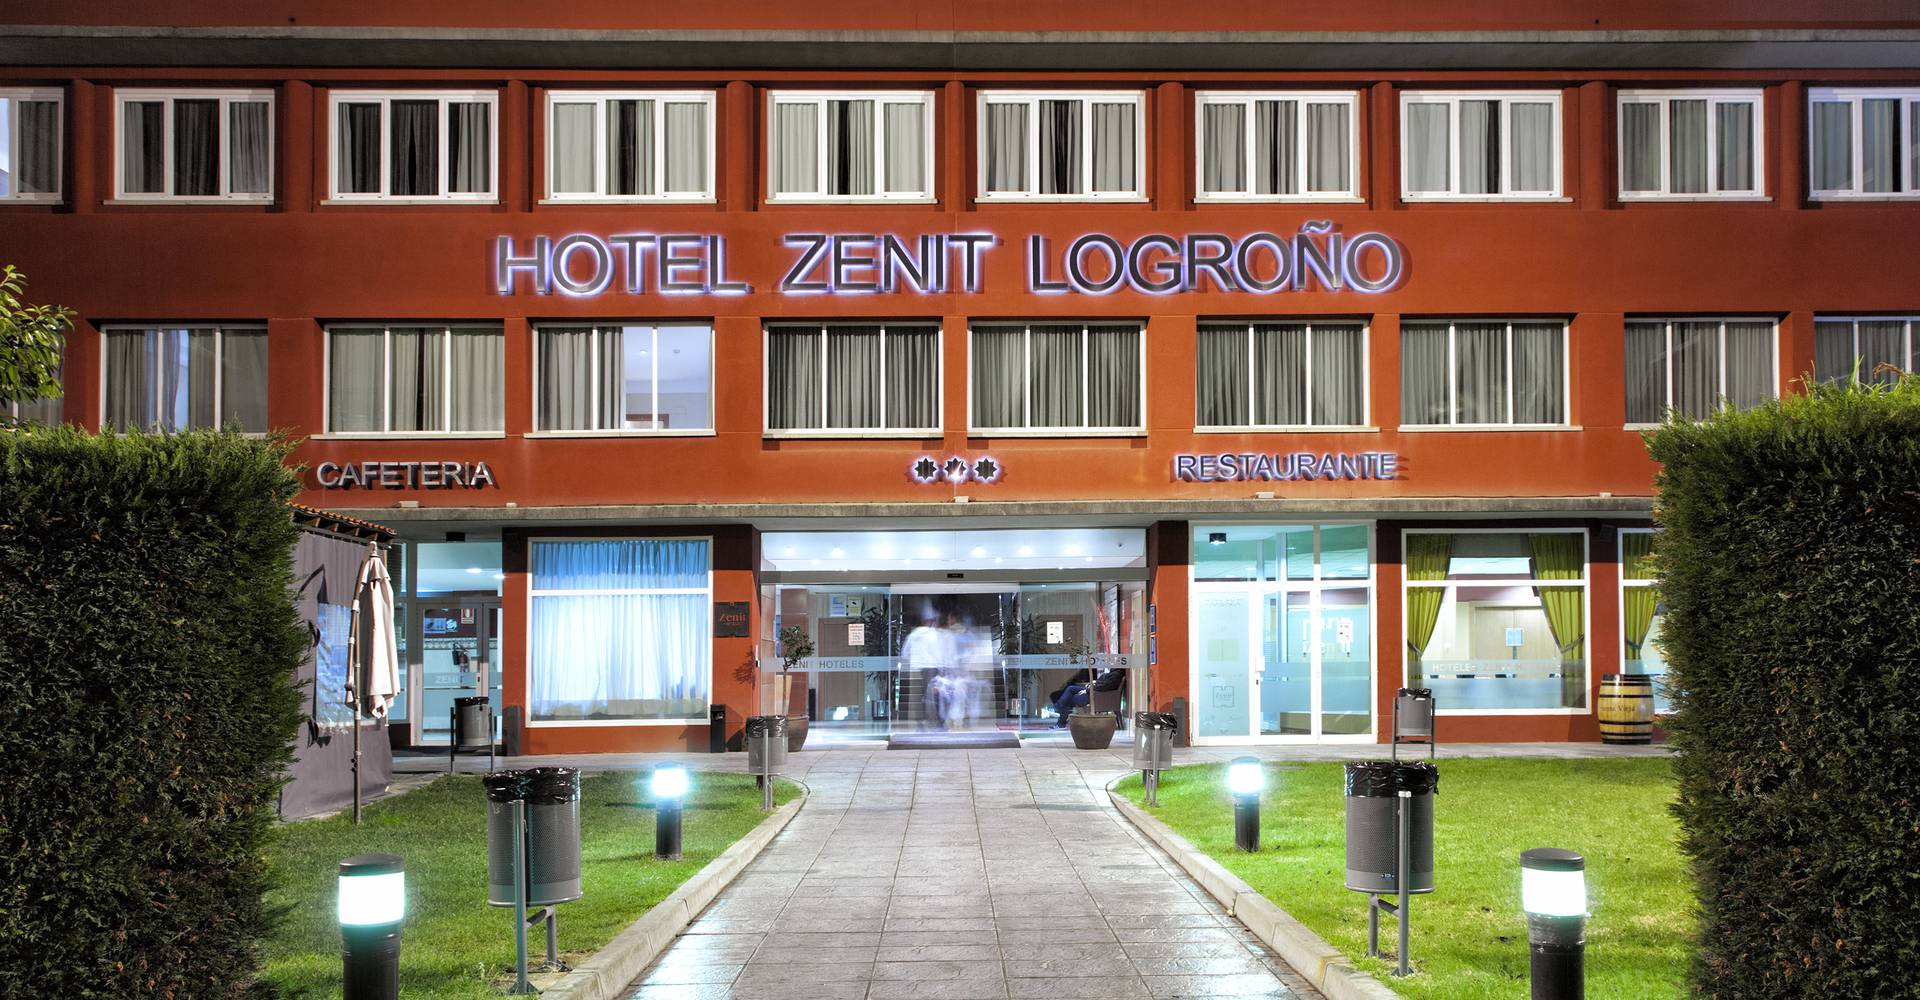  Hotel Zenit Logroño